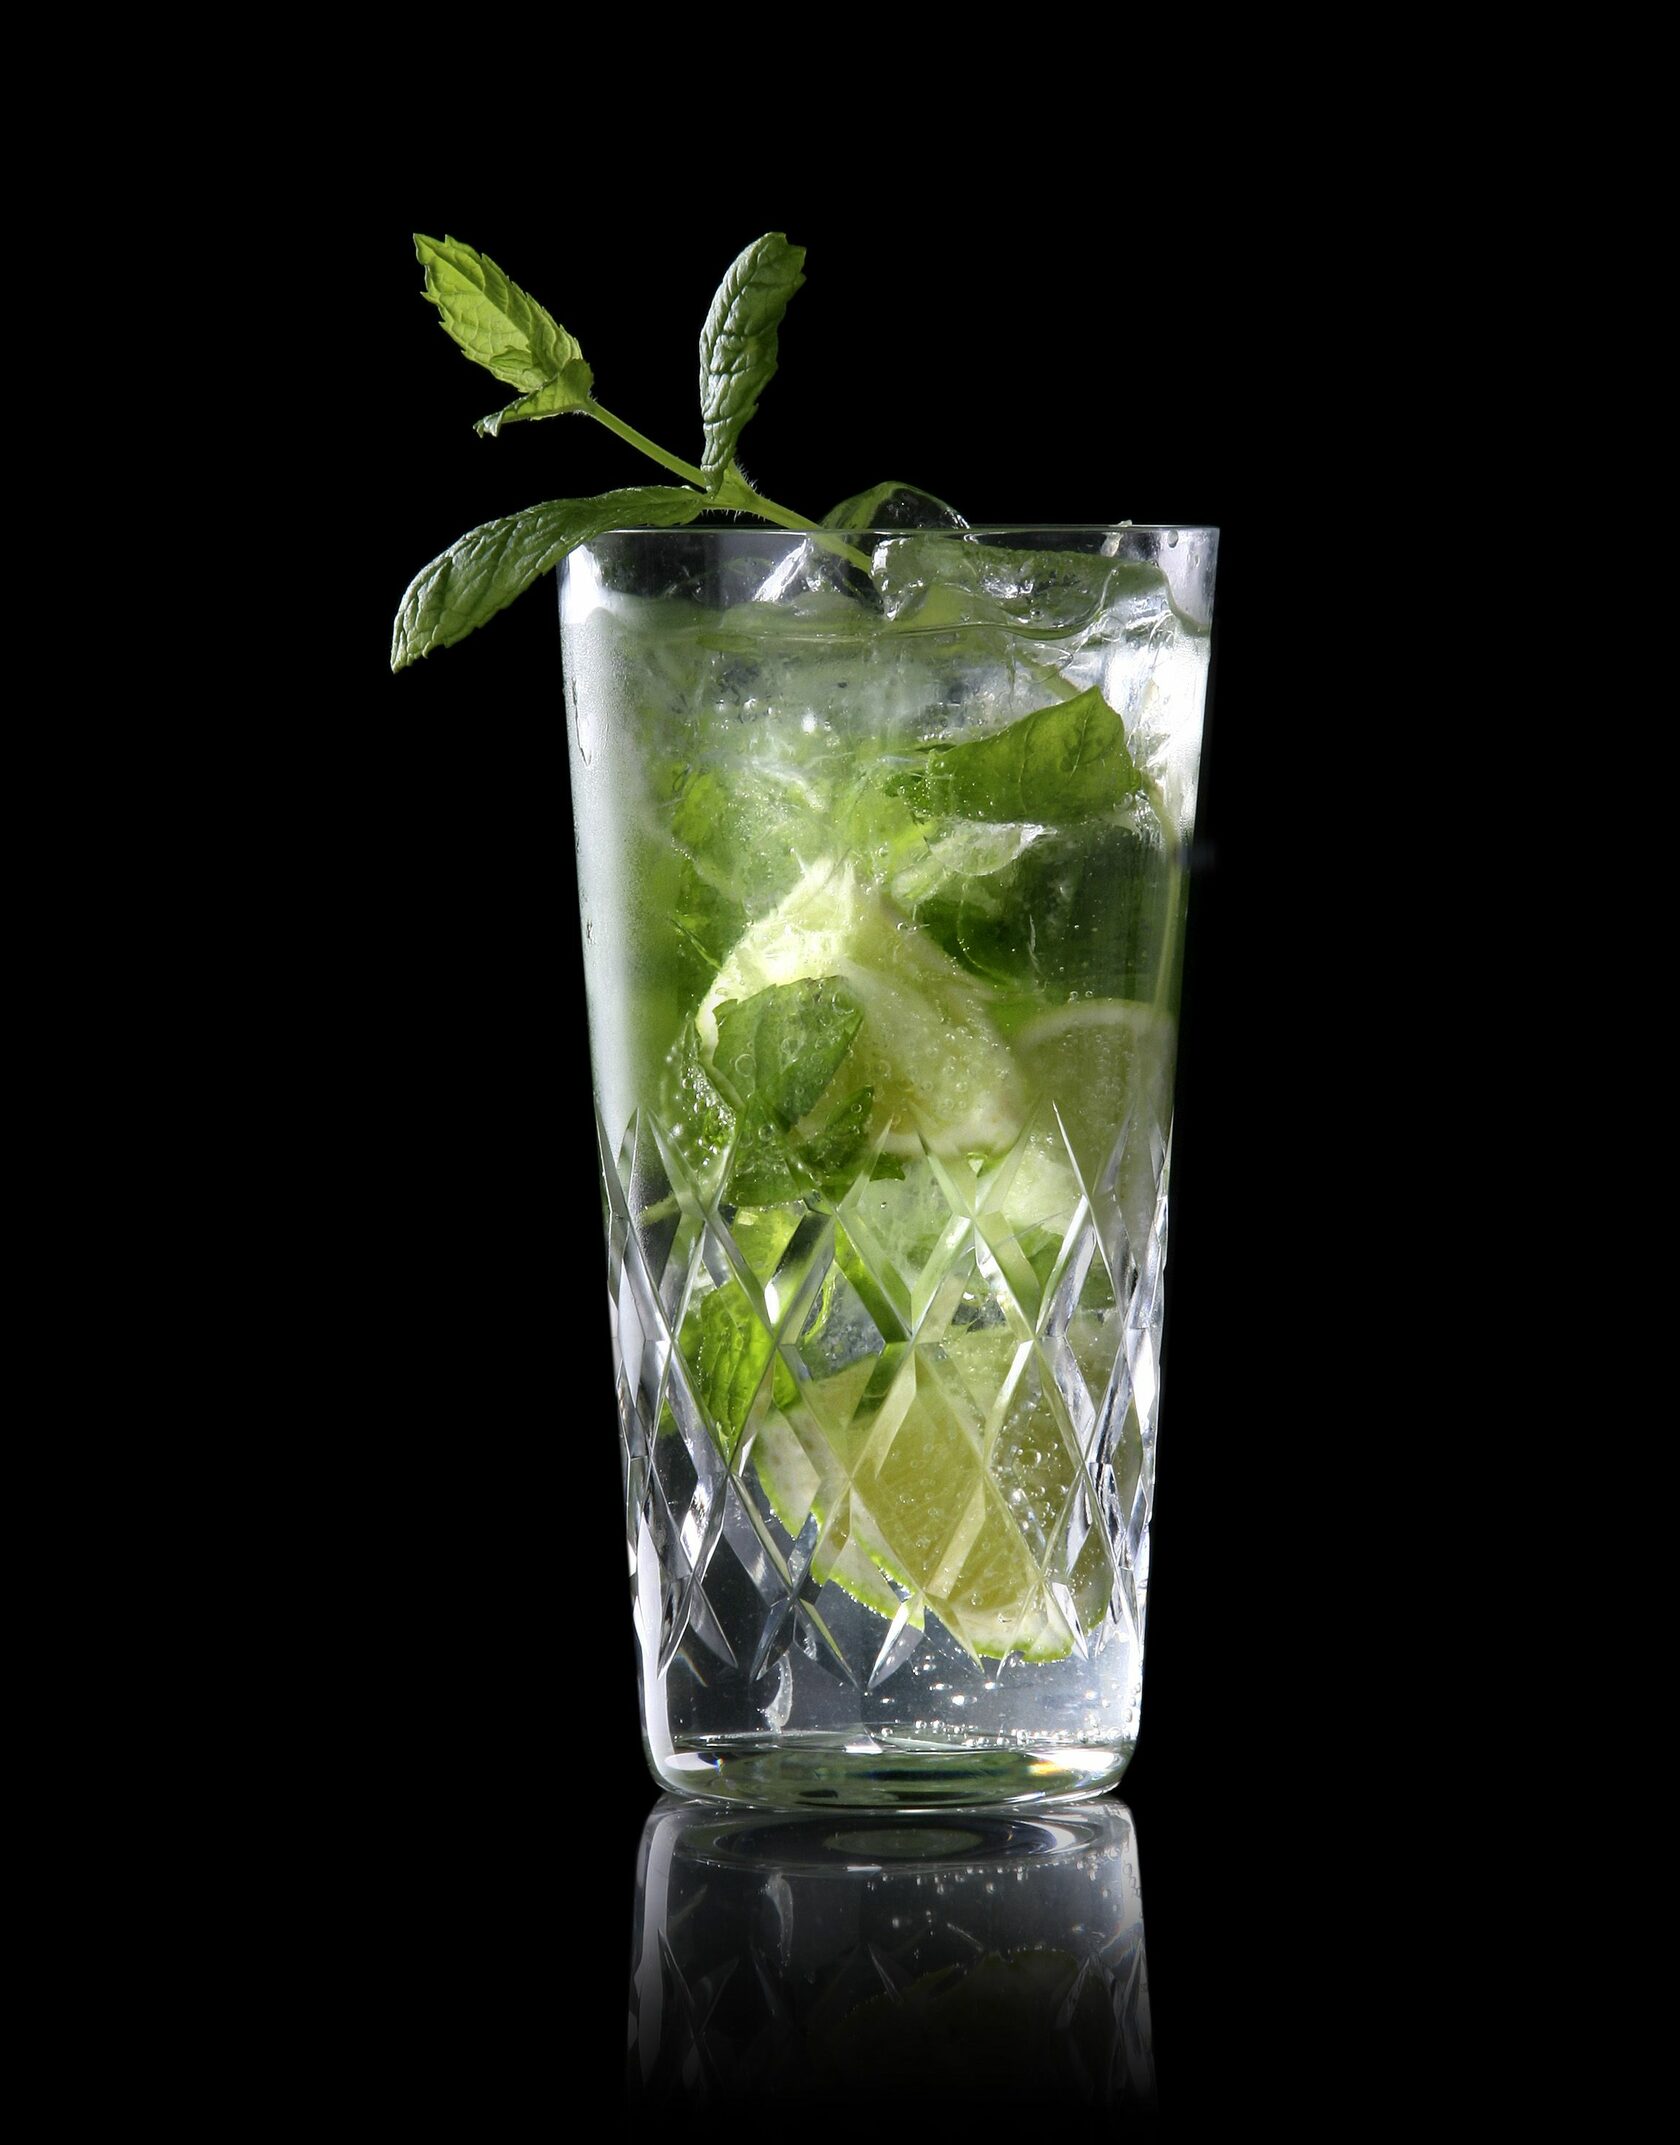 коктейль мохито в стакане хайбол на черном фоне с украшением мятой и лаймом, также видны листья мяты внутри стакана